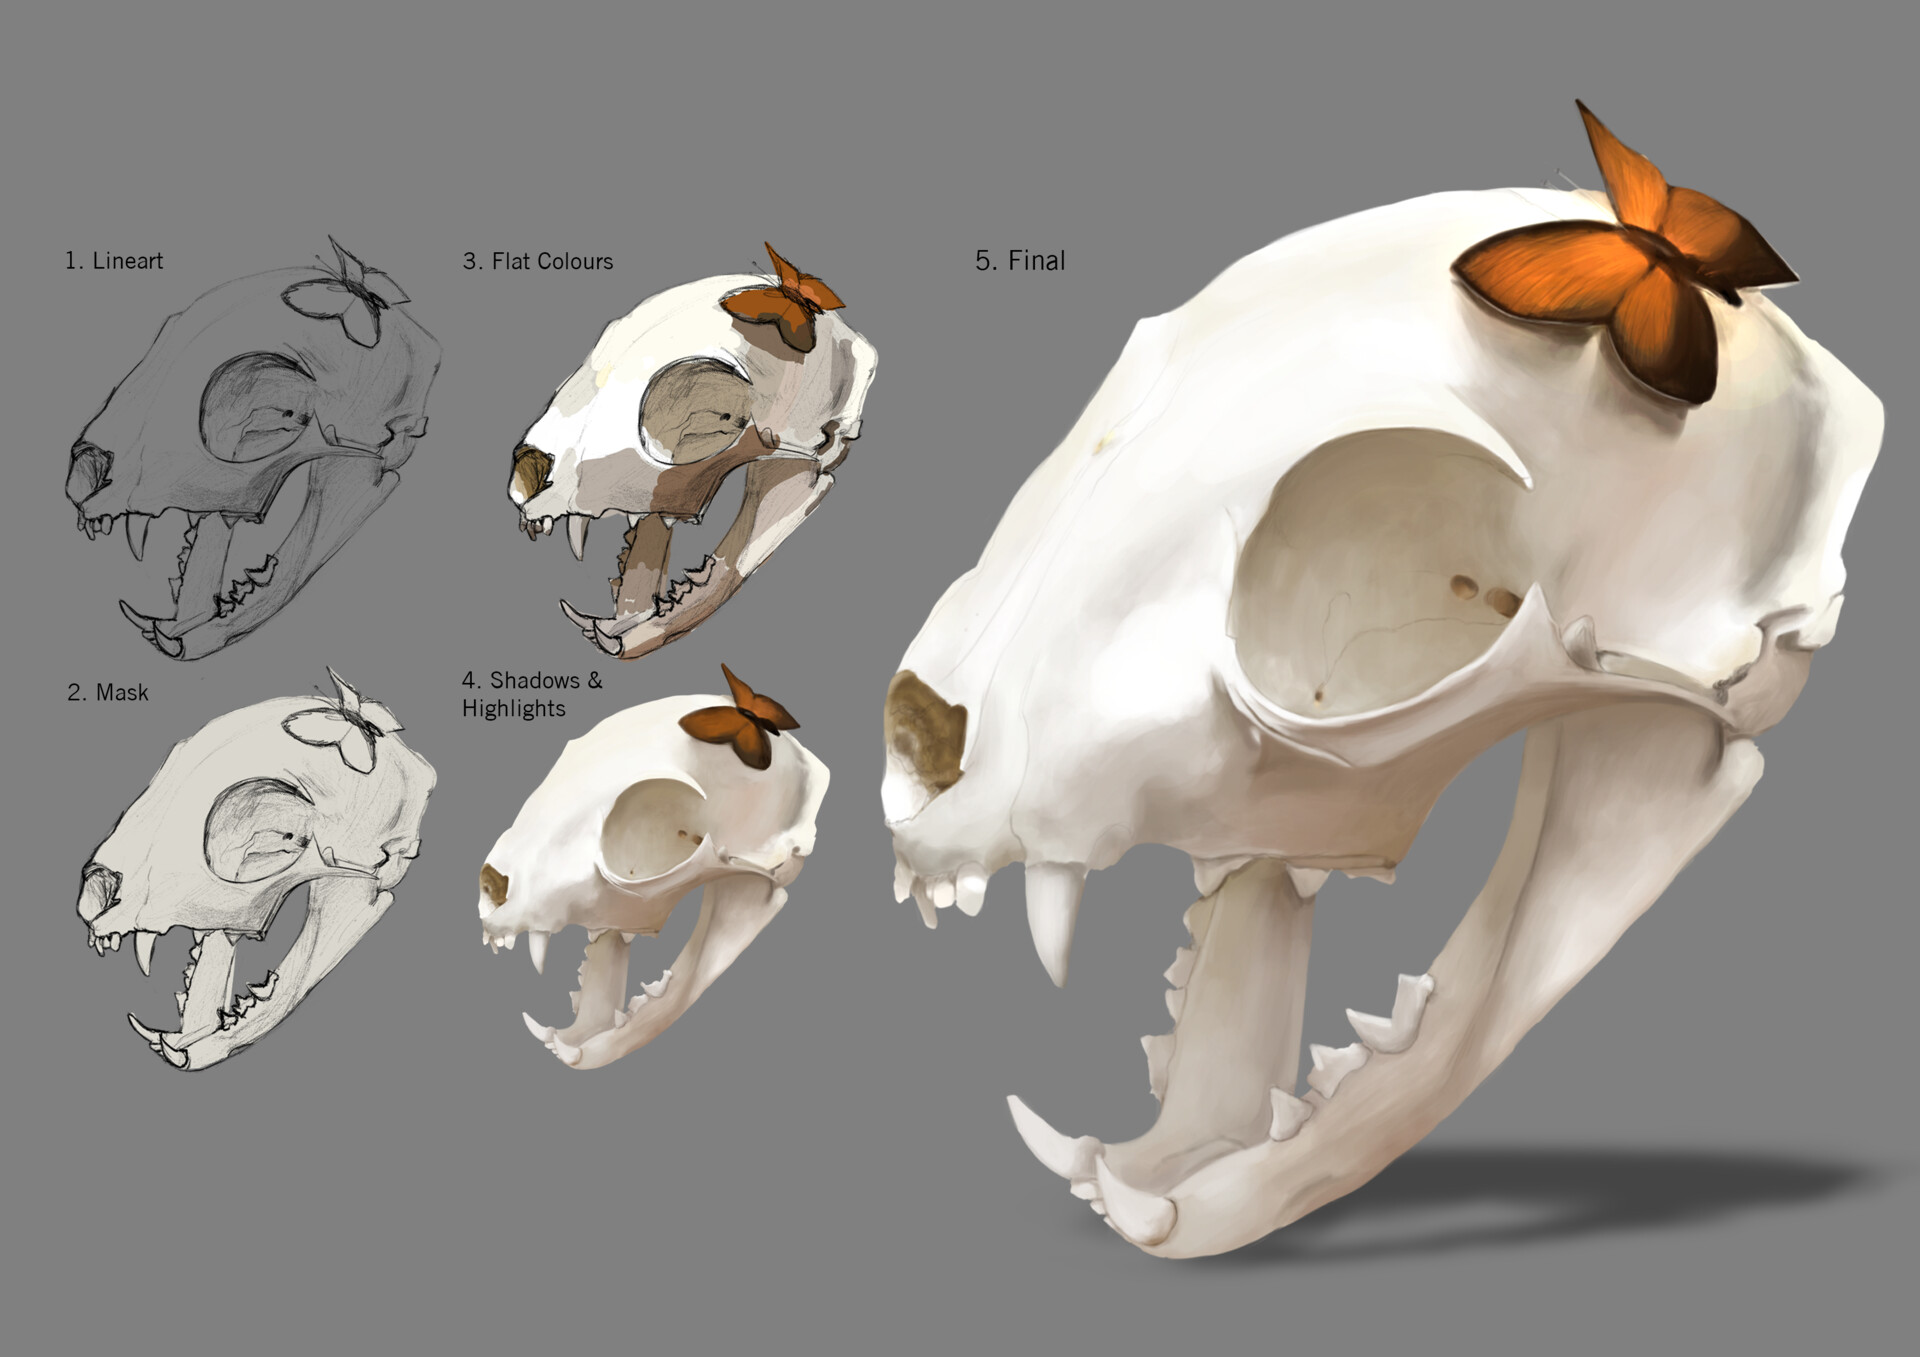 cat skull anatomy dorsal view